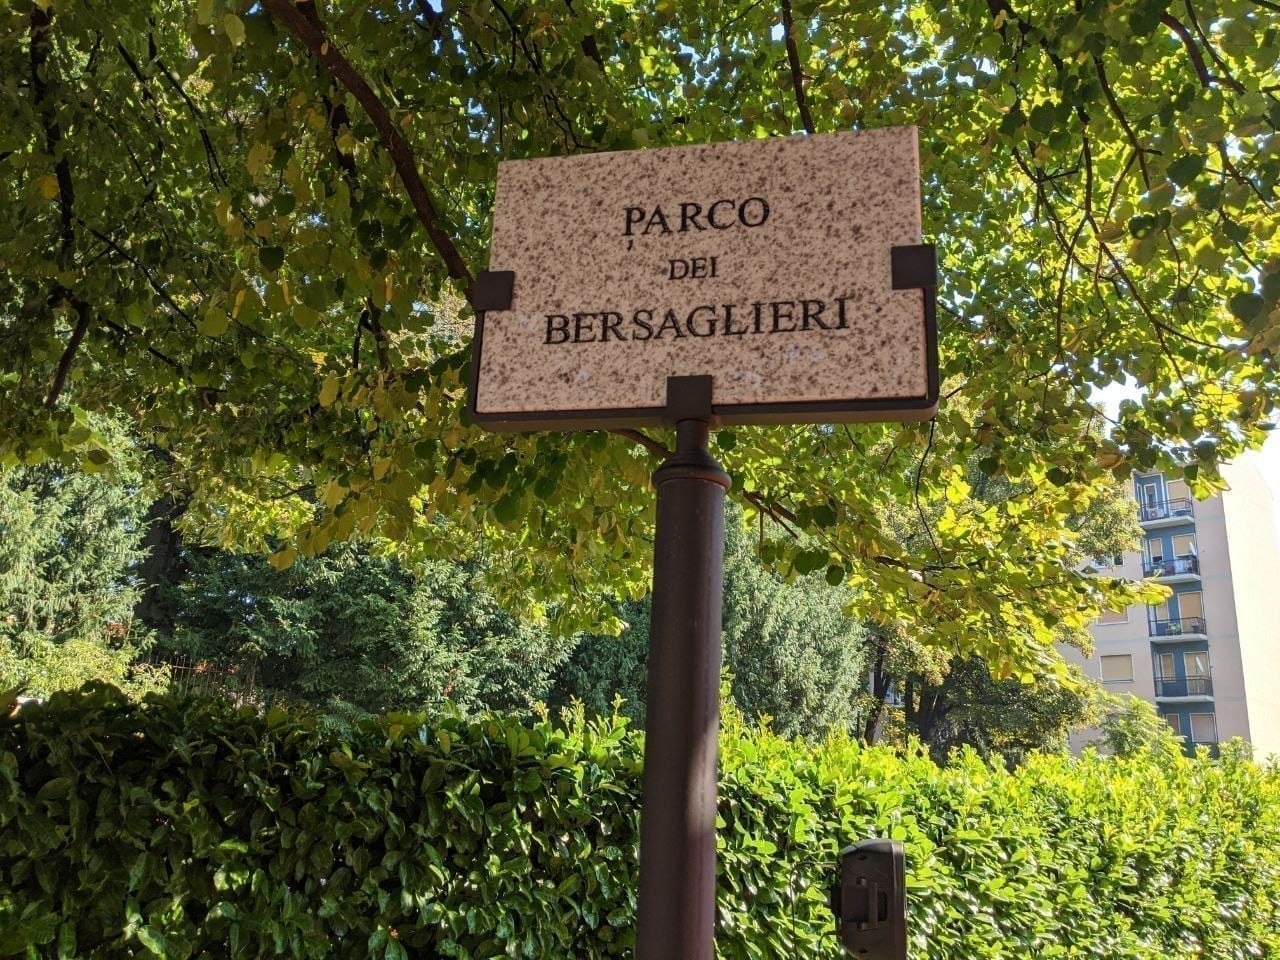 Parco dei Bersaglieri, Veronesi: “Perchè l’Amministrazione si dimentica dell’intitolazione del settembre scorso?”